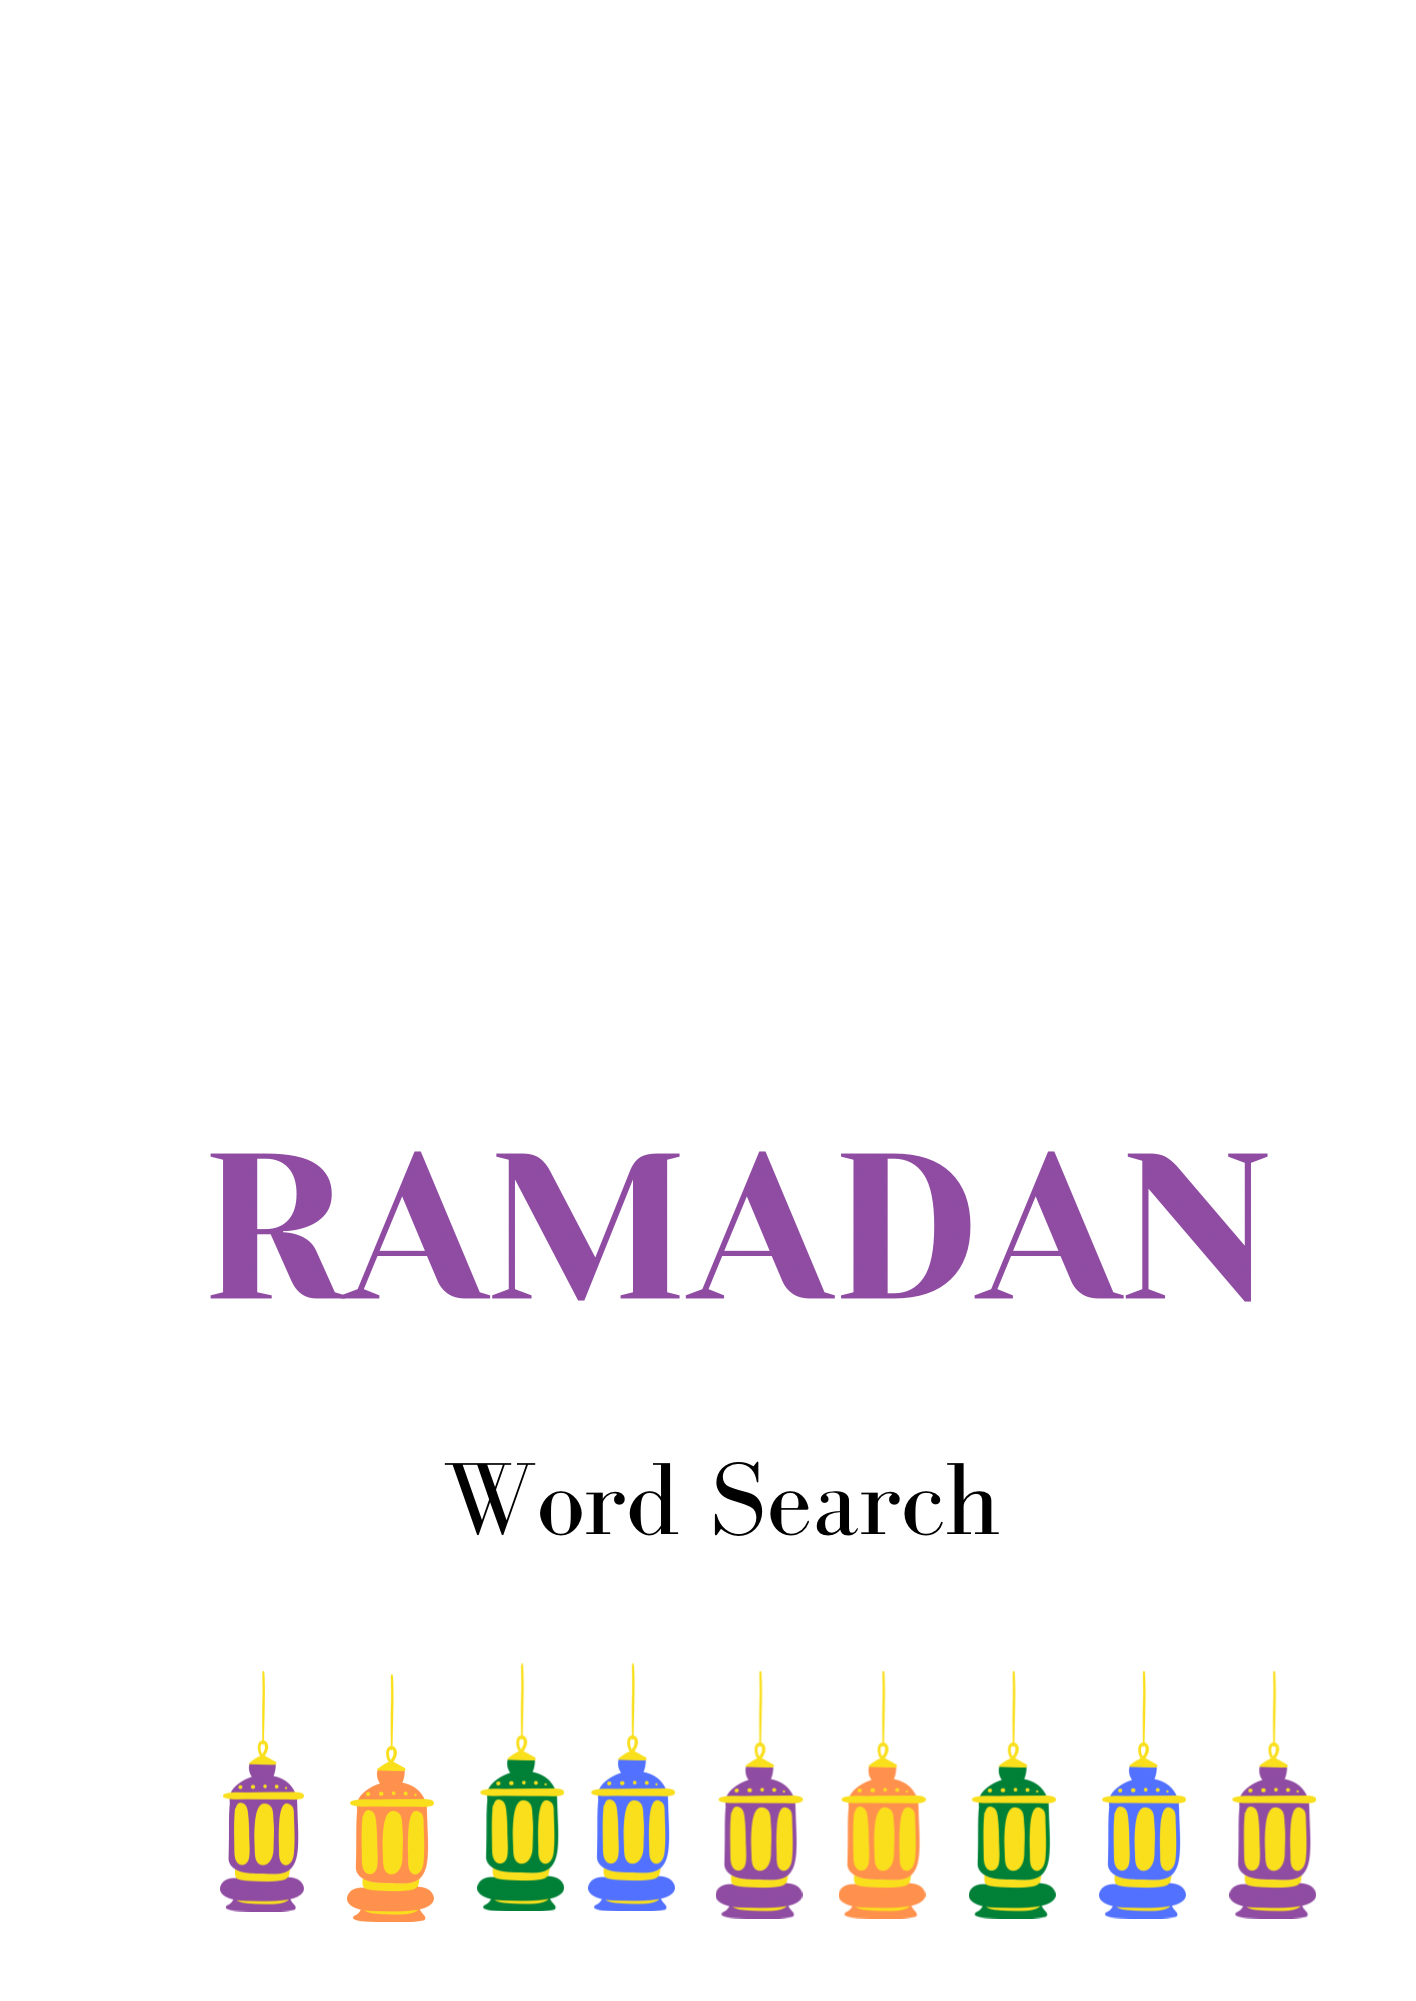 Ramadan Word Search Game